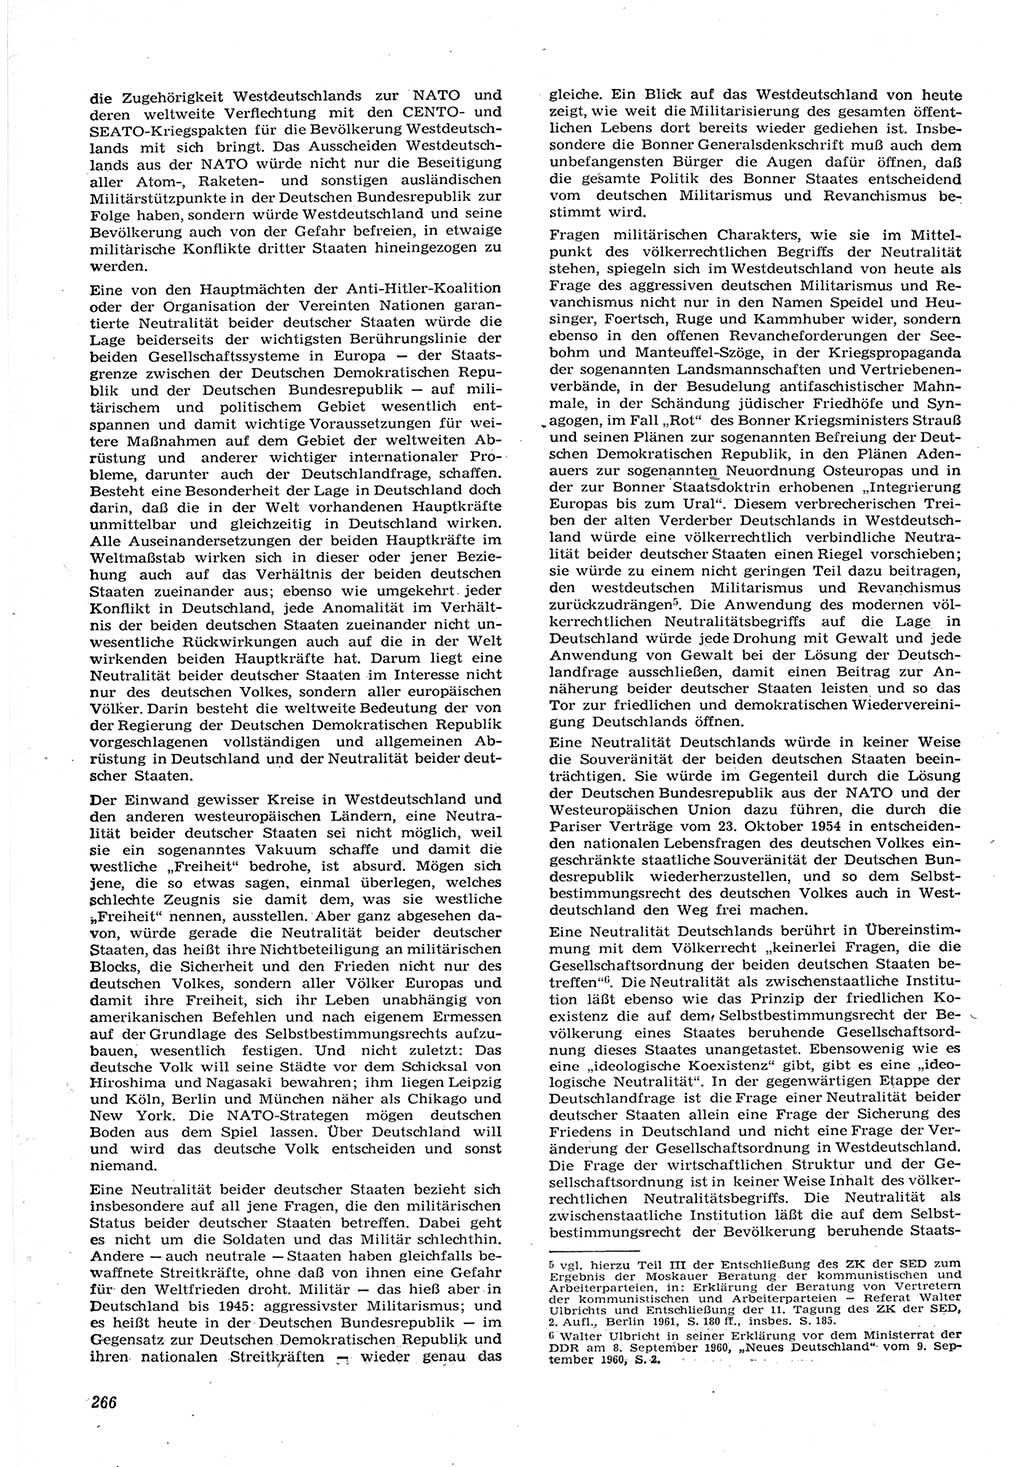 Neue Justiz (NJ), Zeitschrift für Recht und Rechtswissenschaft [Deutsche Demokratische Republik (DDR)], 15. Jahrgang 1961, Seite 266 (NJ DDR 1961, S. 266)